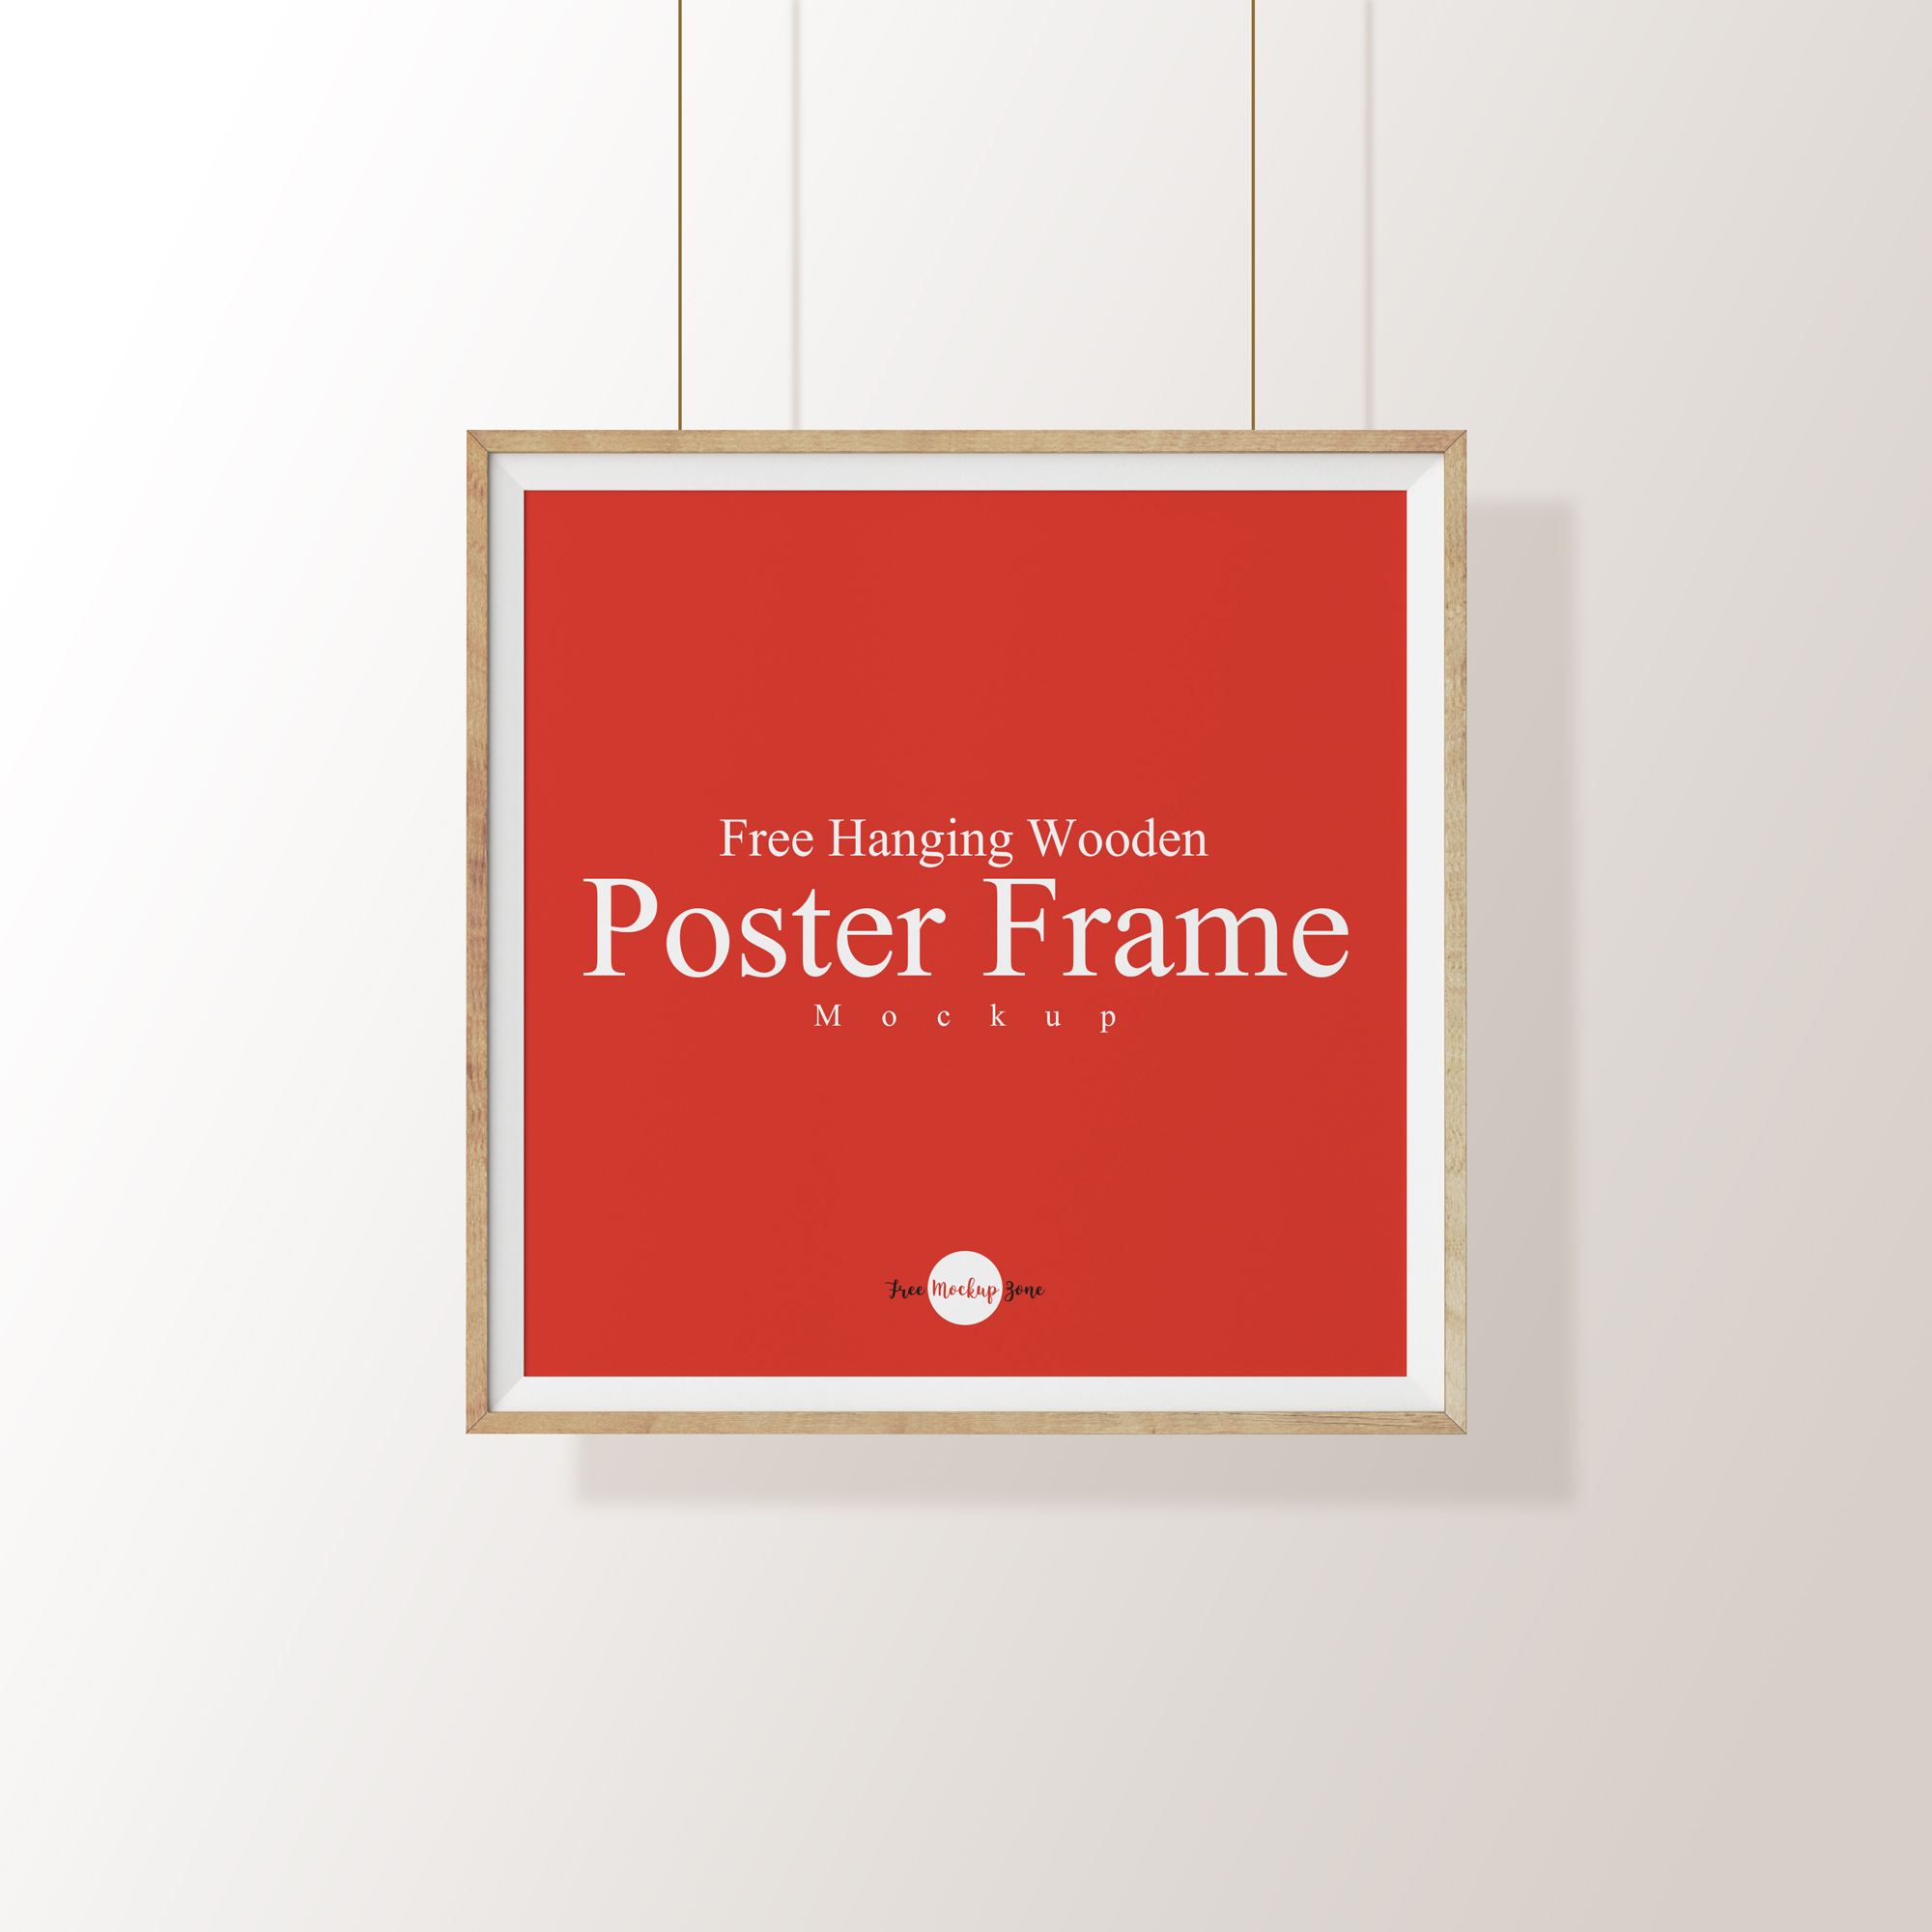 Free-Hanging-Wooden-Poster-Frame-Mockup